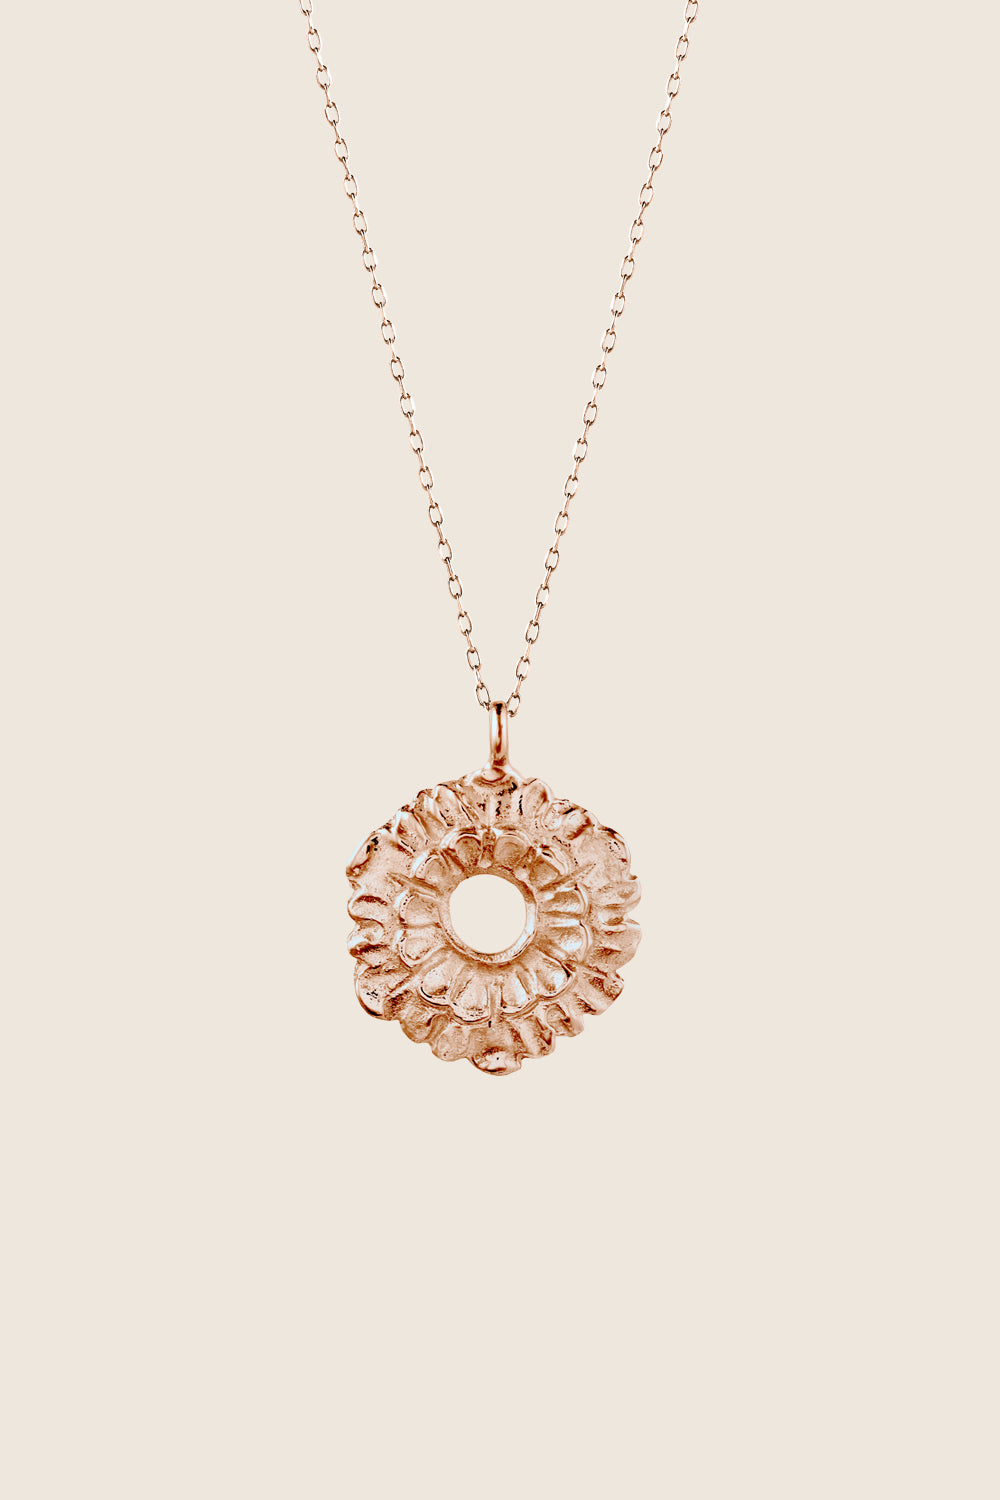 naszyjnik kwiat różowe złoto 585 LATIA polska biżuteria UMIAR